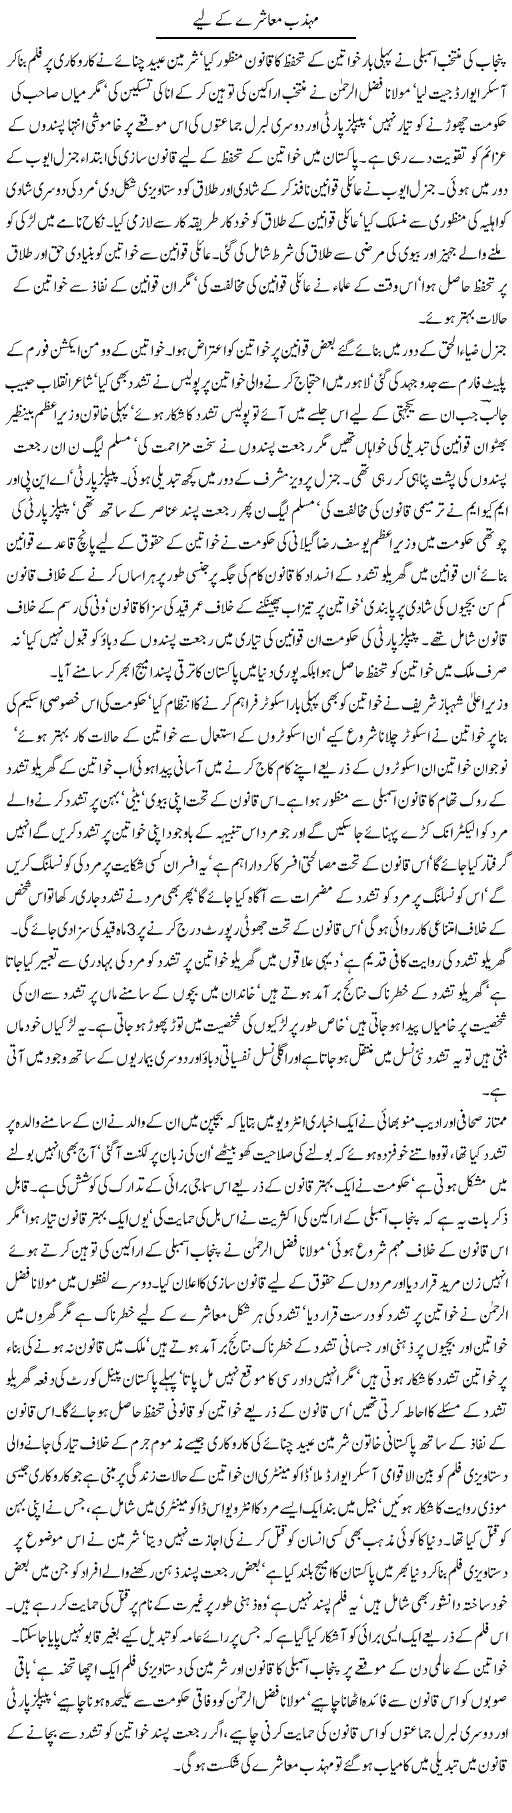 Mohazab Muashray Ke Liye | Tausif Ahmad Khan | Daily Urdu Columns